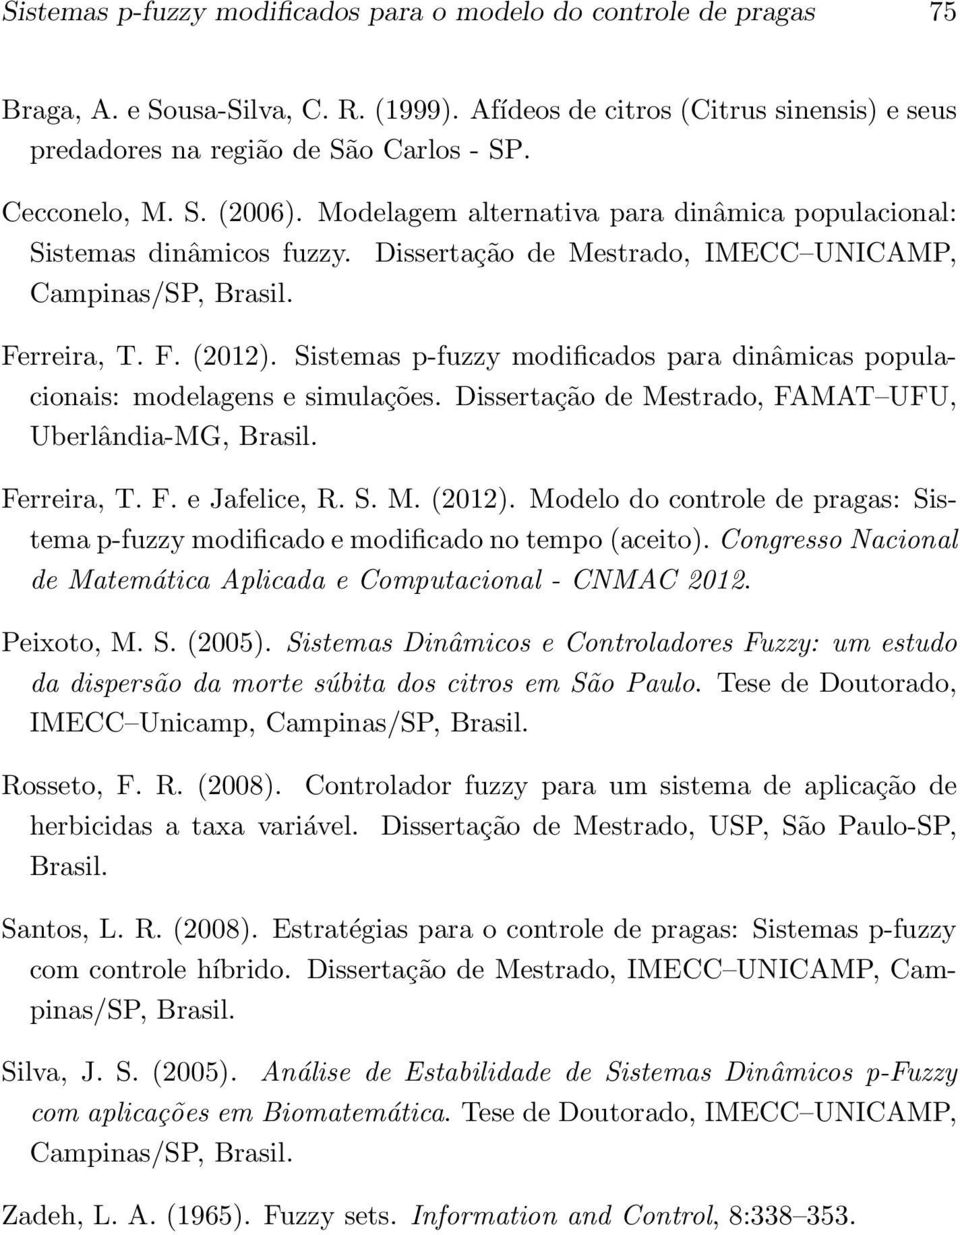 Sistemas p-fuzzy modificados para dinâmicas populacionais: modelagens e simulações. Dissertação de Mestrado, FAMAT UFU, Uberlândia-MG, Brasil. Ferreira, T. F. e Jafelice, R. S. M. (2012).